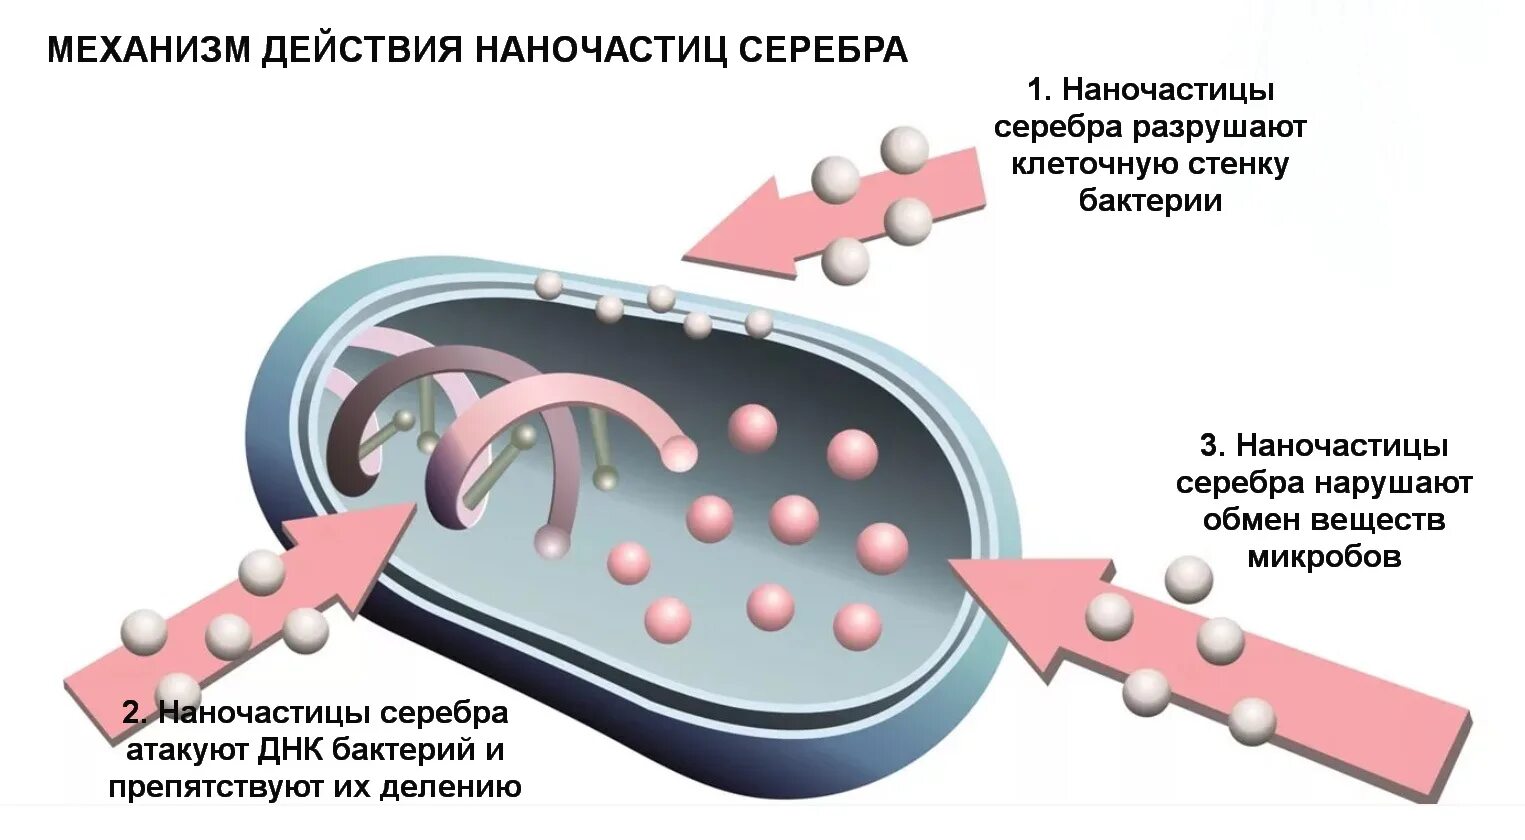 Вещества разрушающие клетку. Антибактериальная активность наночастиц серебра. Серебро механизм действия. Механизм действия наночастиц серебра. Разрушение клеточной стенки бактерий ионами серебра.